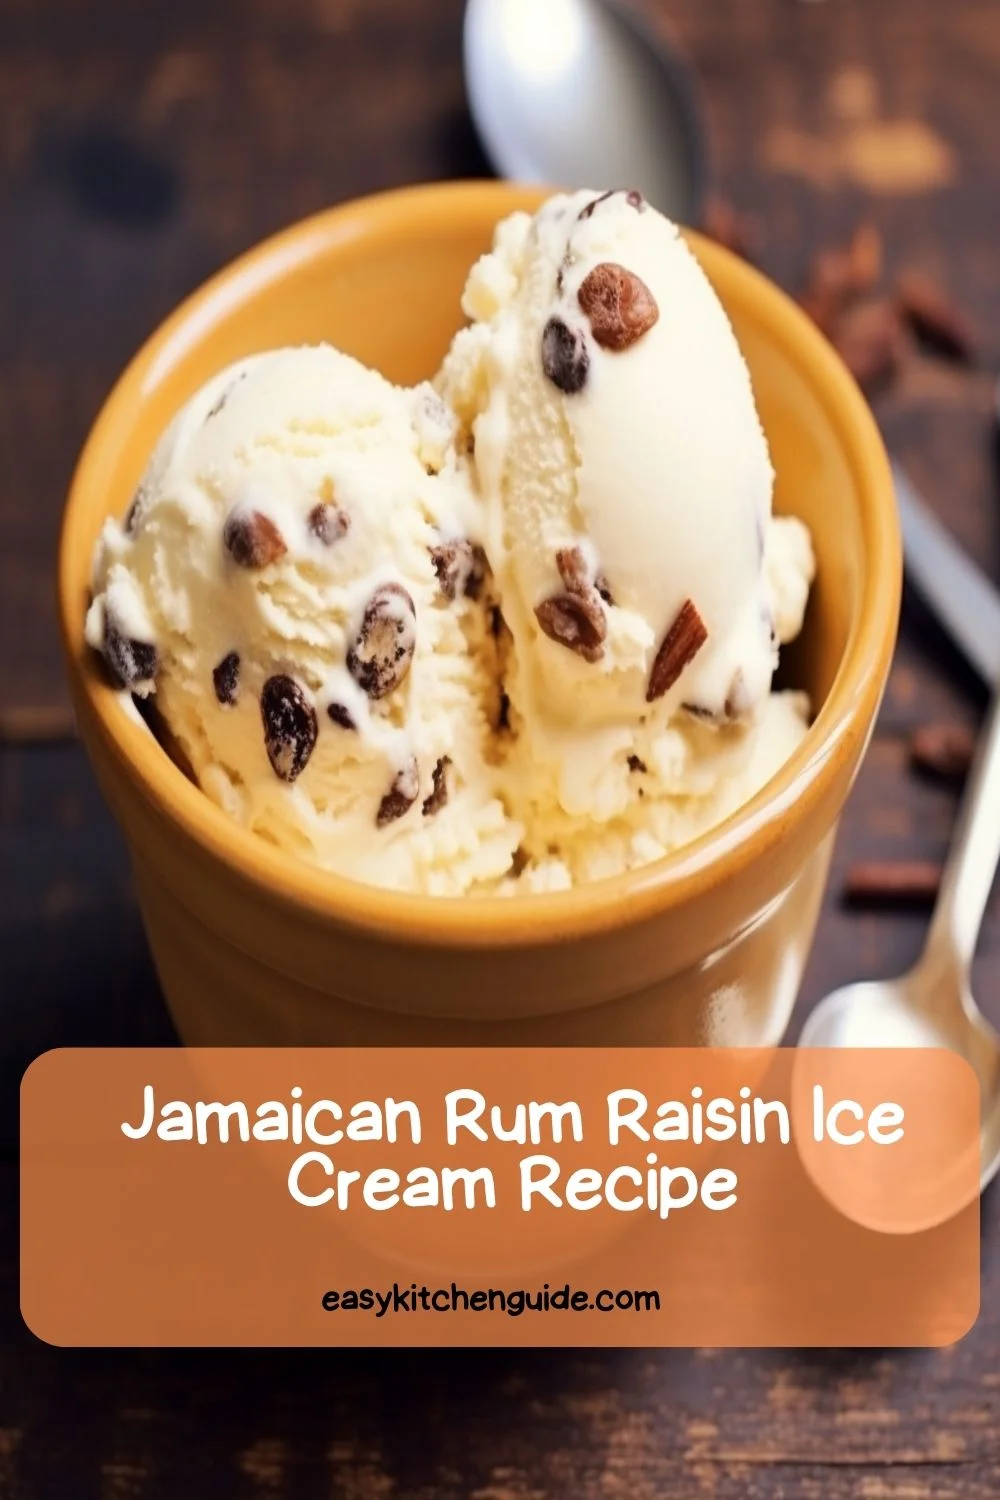 Jamaican Rum Raisin Ice Cream Recipe